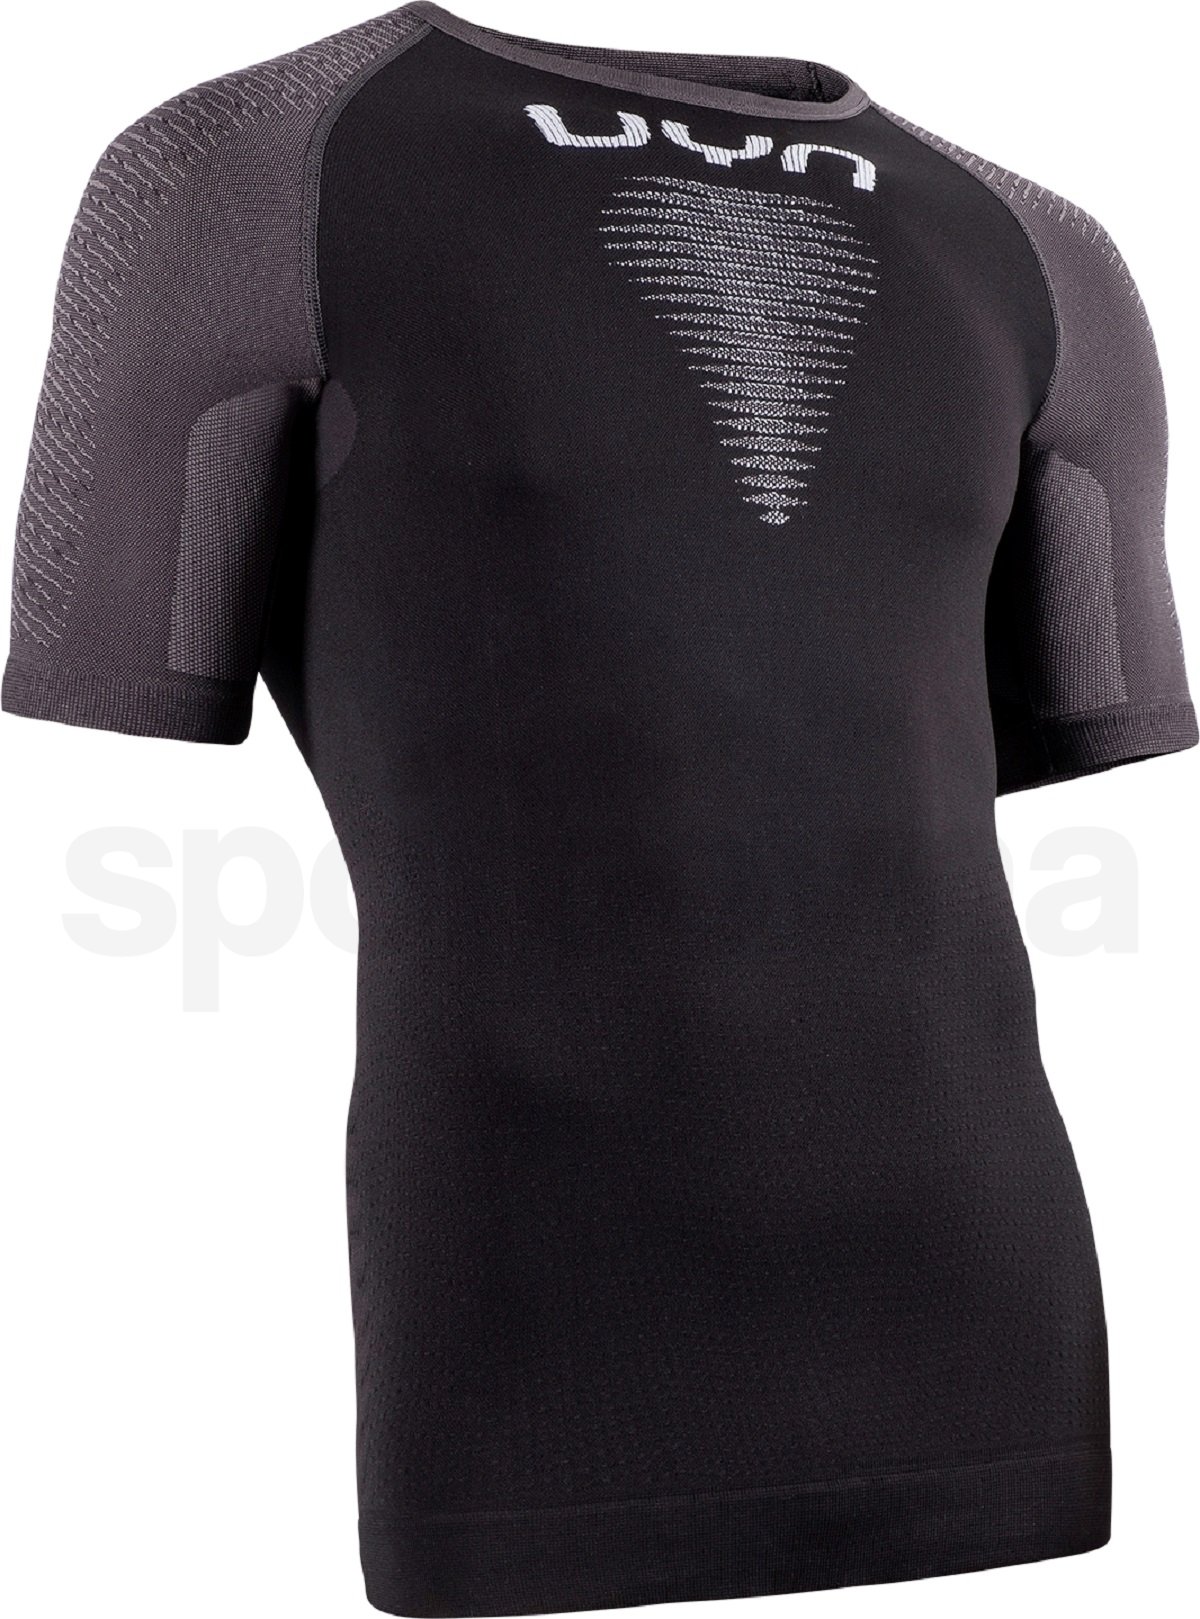 Tričko UYN Marathon OW Shirt SH SL M - černá/šedá/bílá